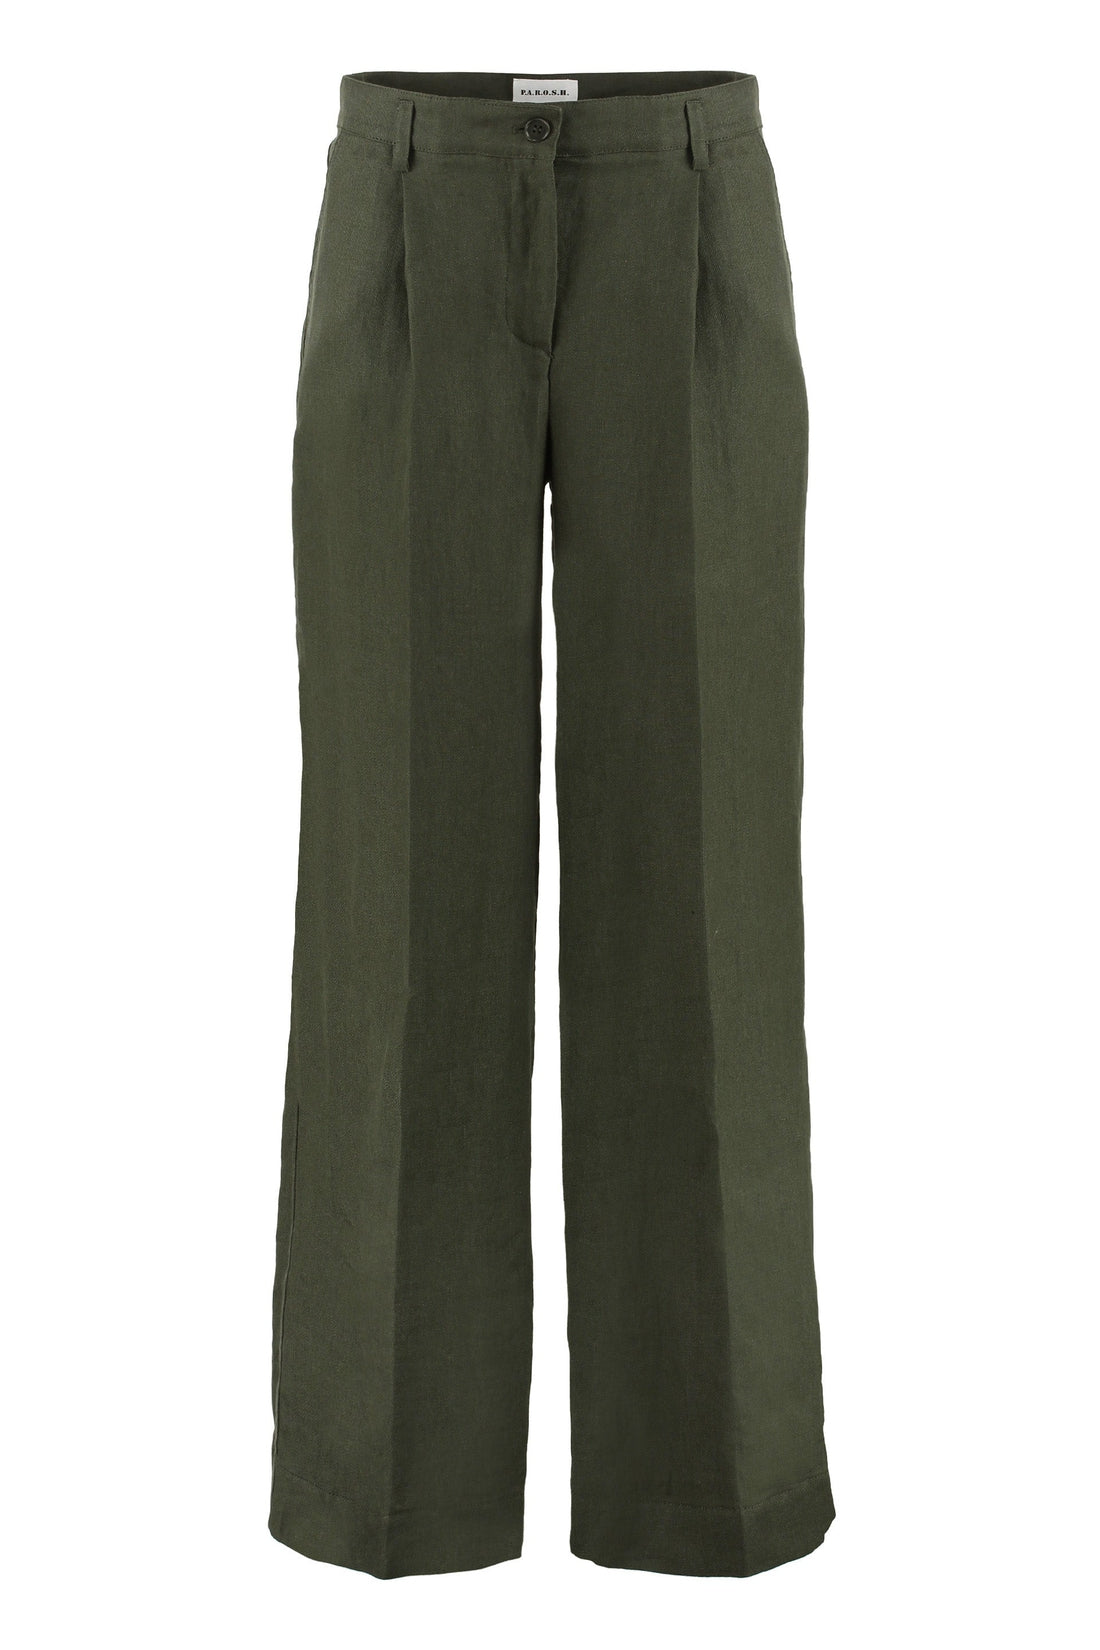 Parosh-OUTLET-SALE-Wide-leg trousers-ARCHIVIST